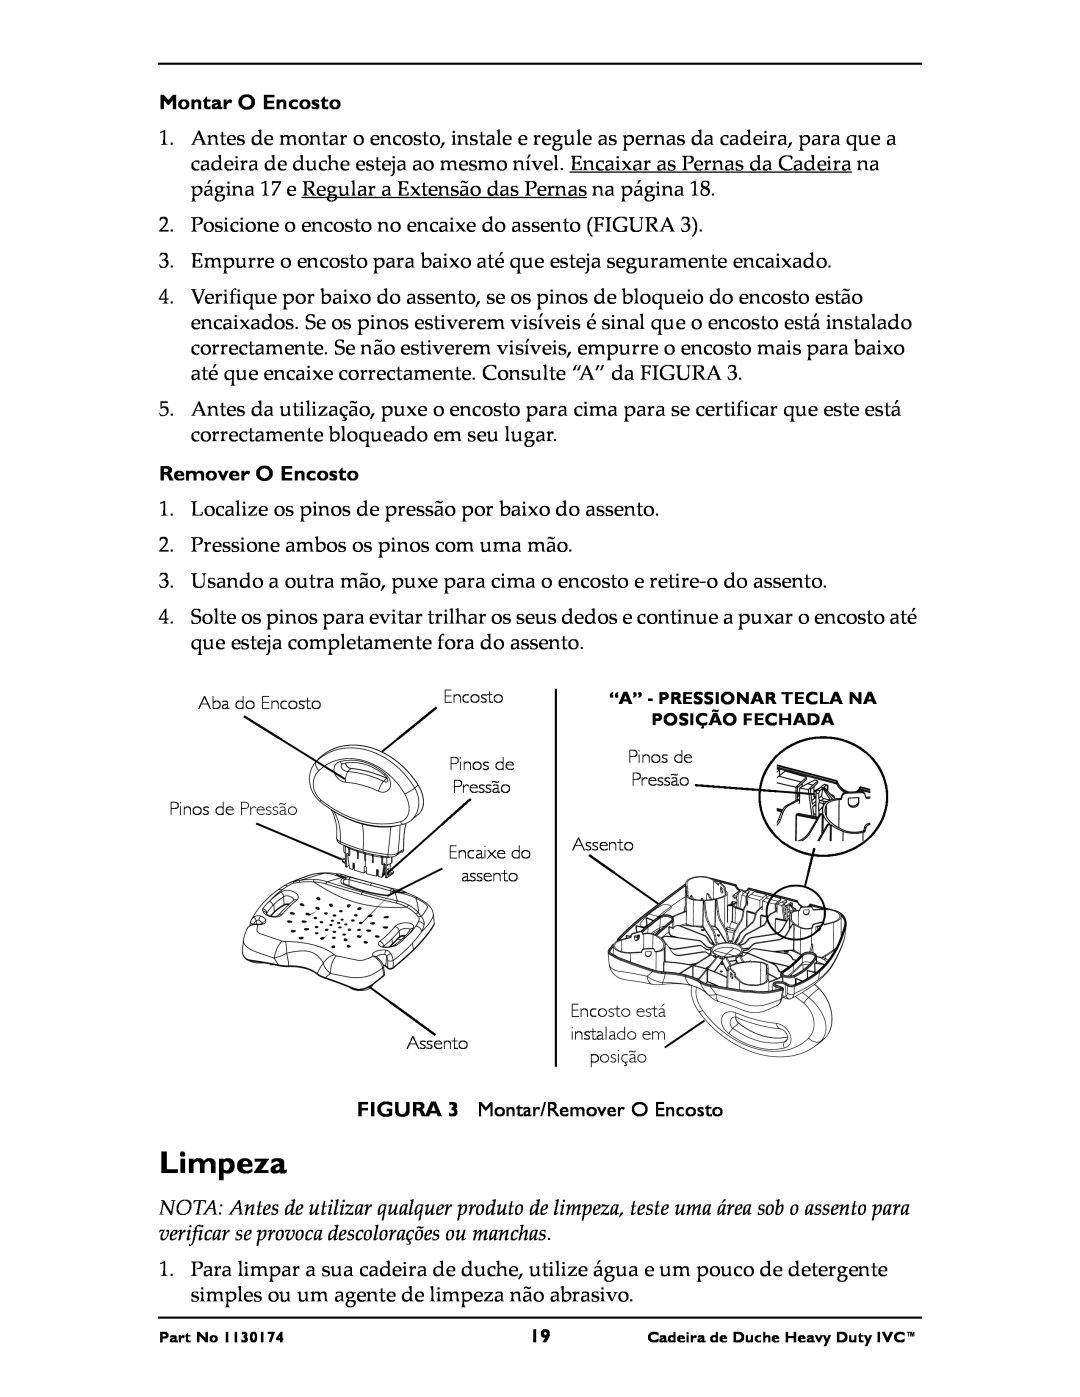 Invacare 9781E, 9780E instruction sheet Limpeza, Montar O Encosto, Remover O Encosto 